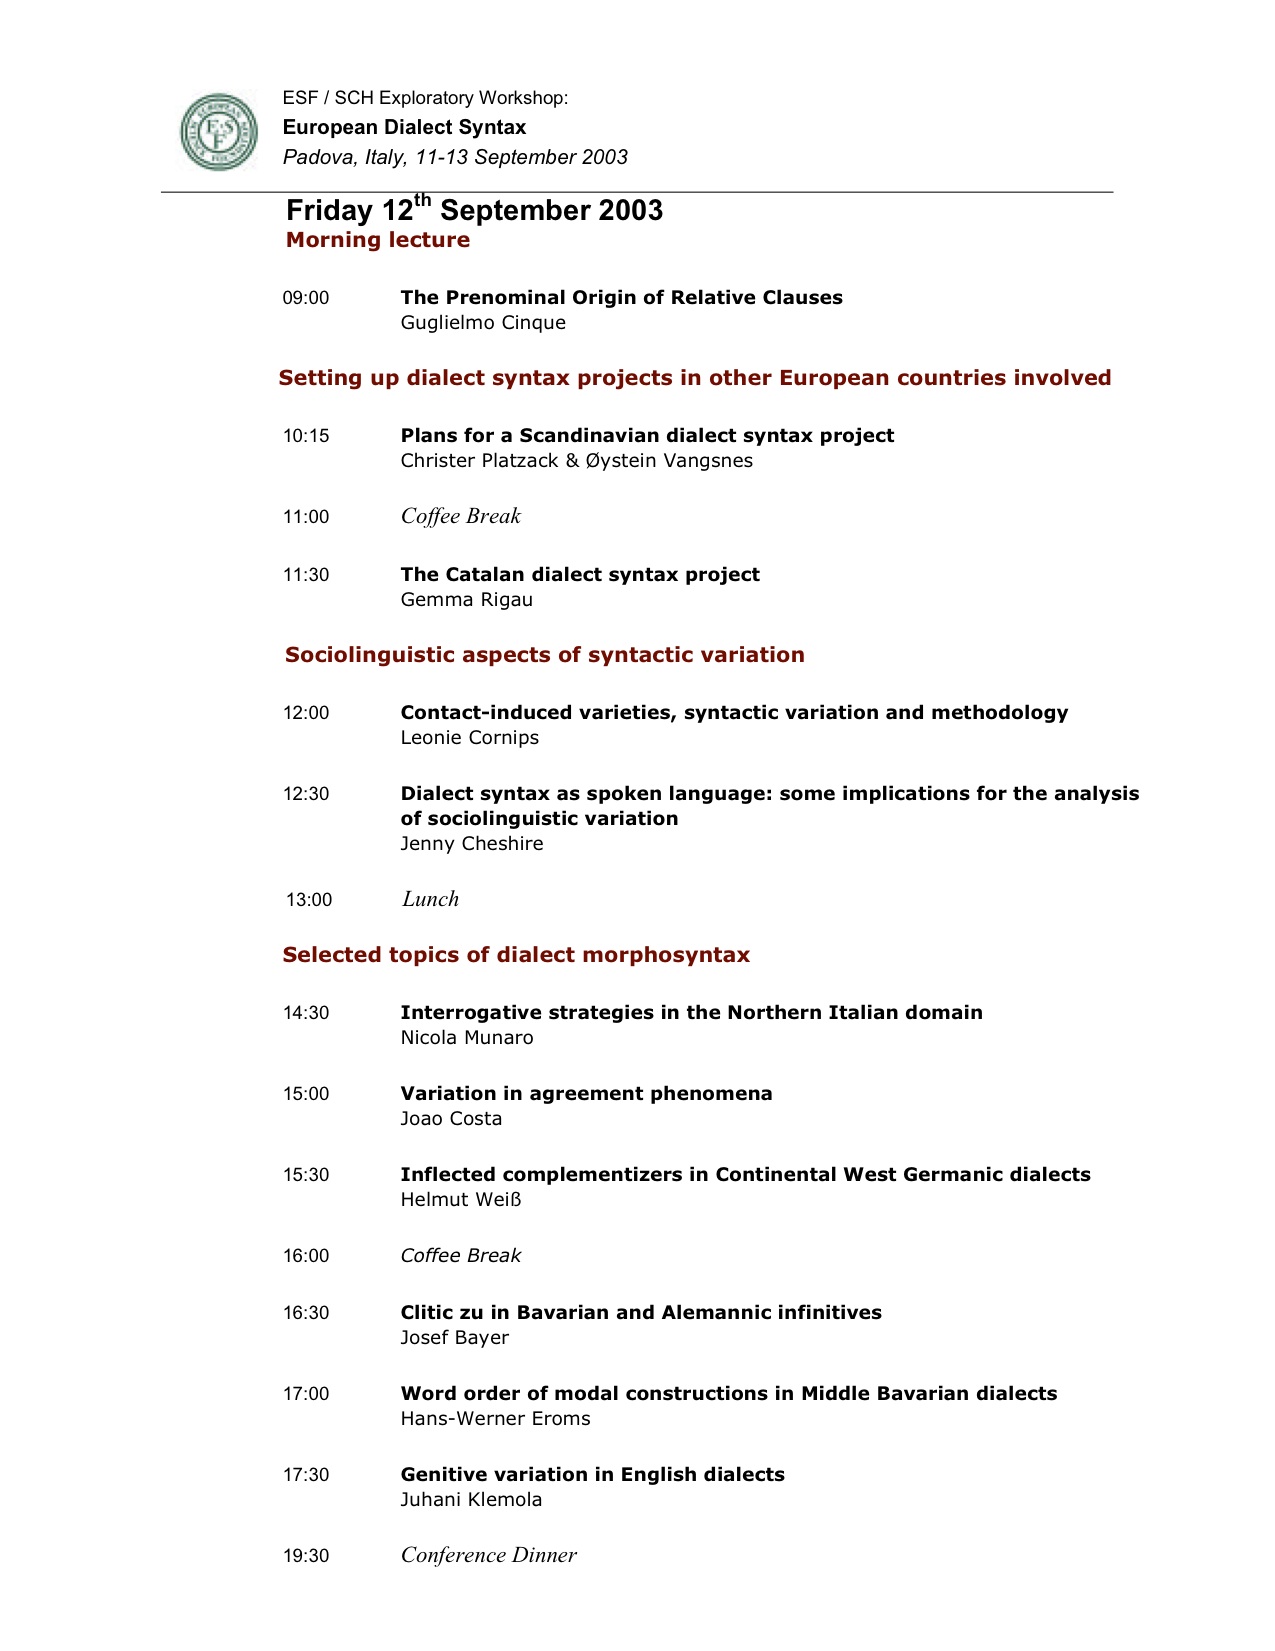 ESF Workshop Padua 2003(continued).jpg